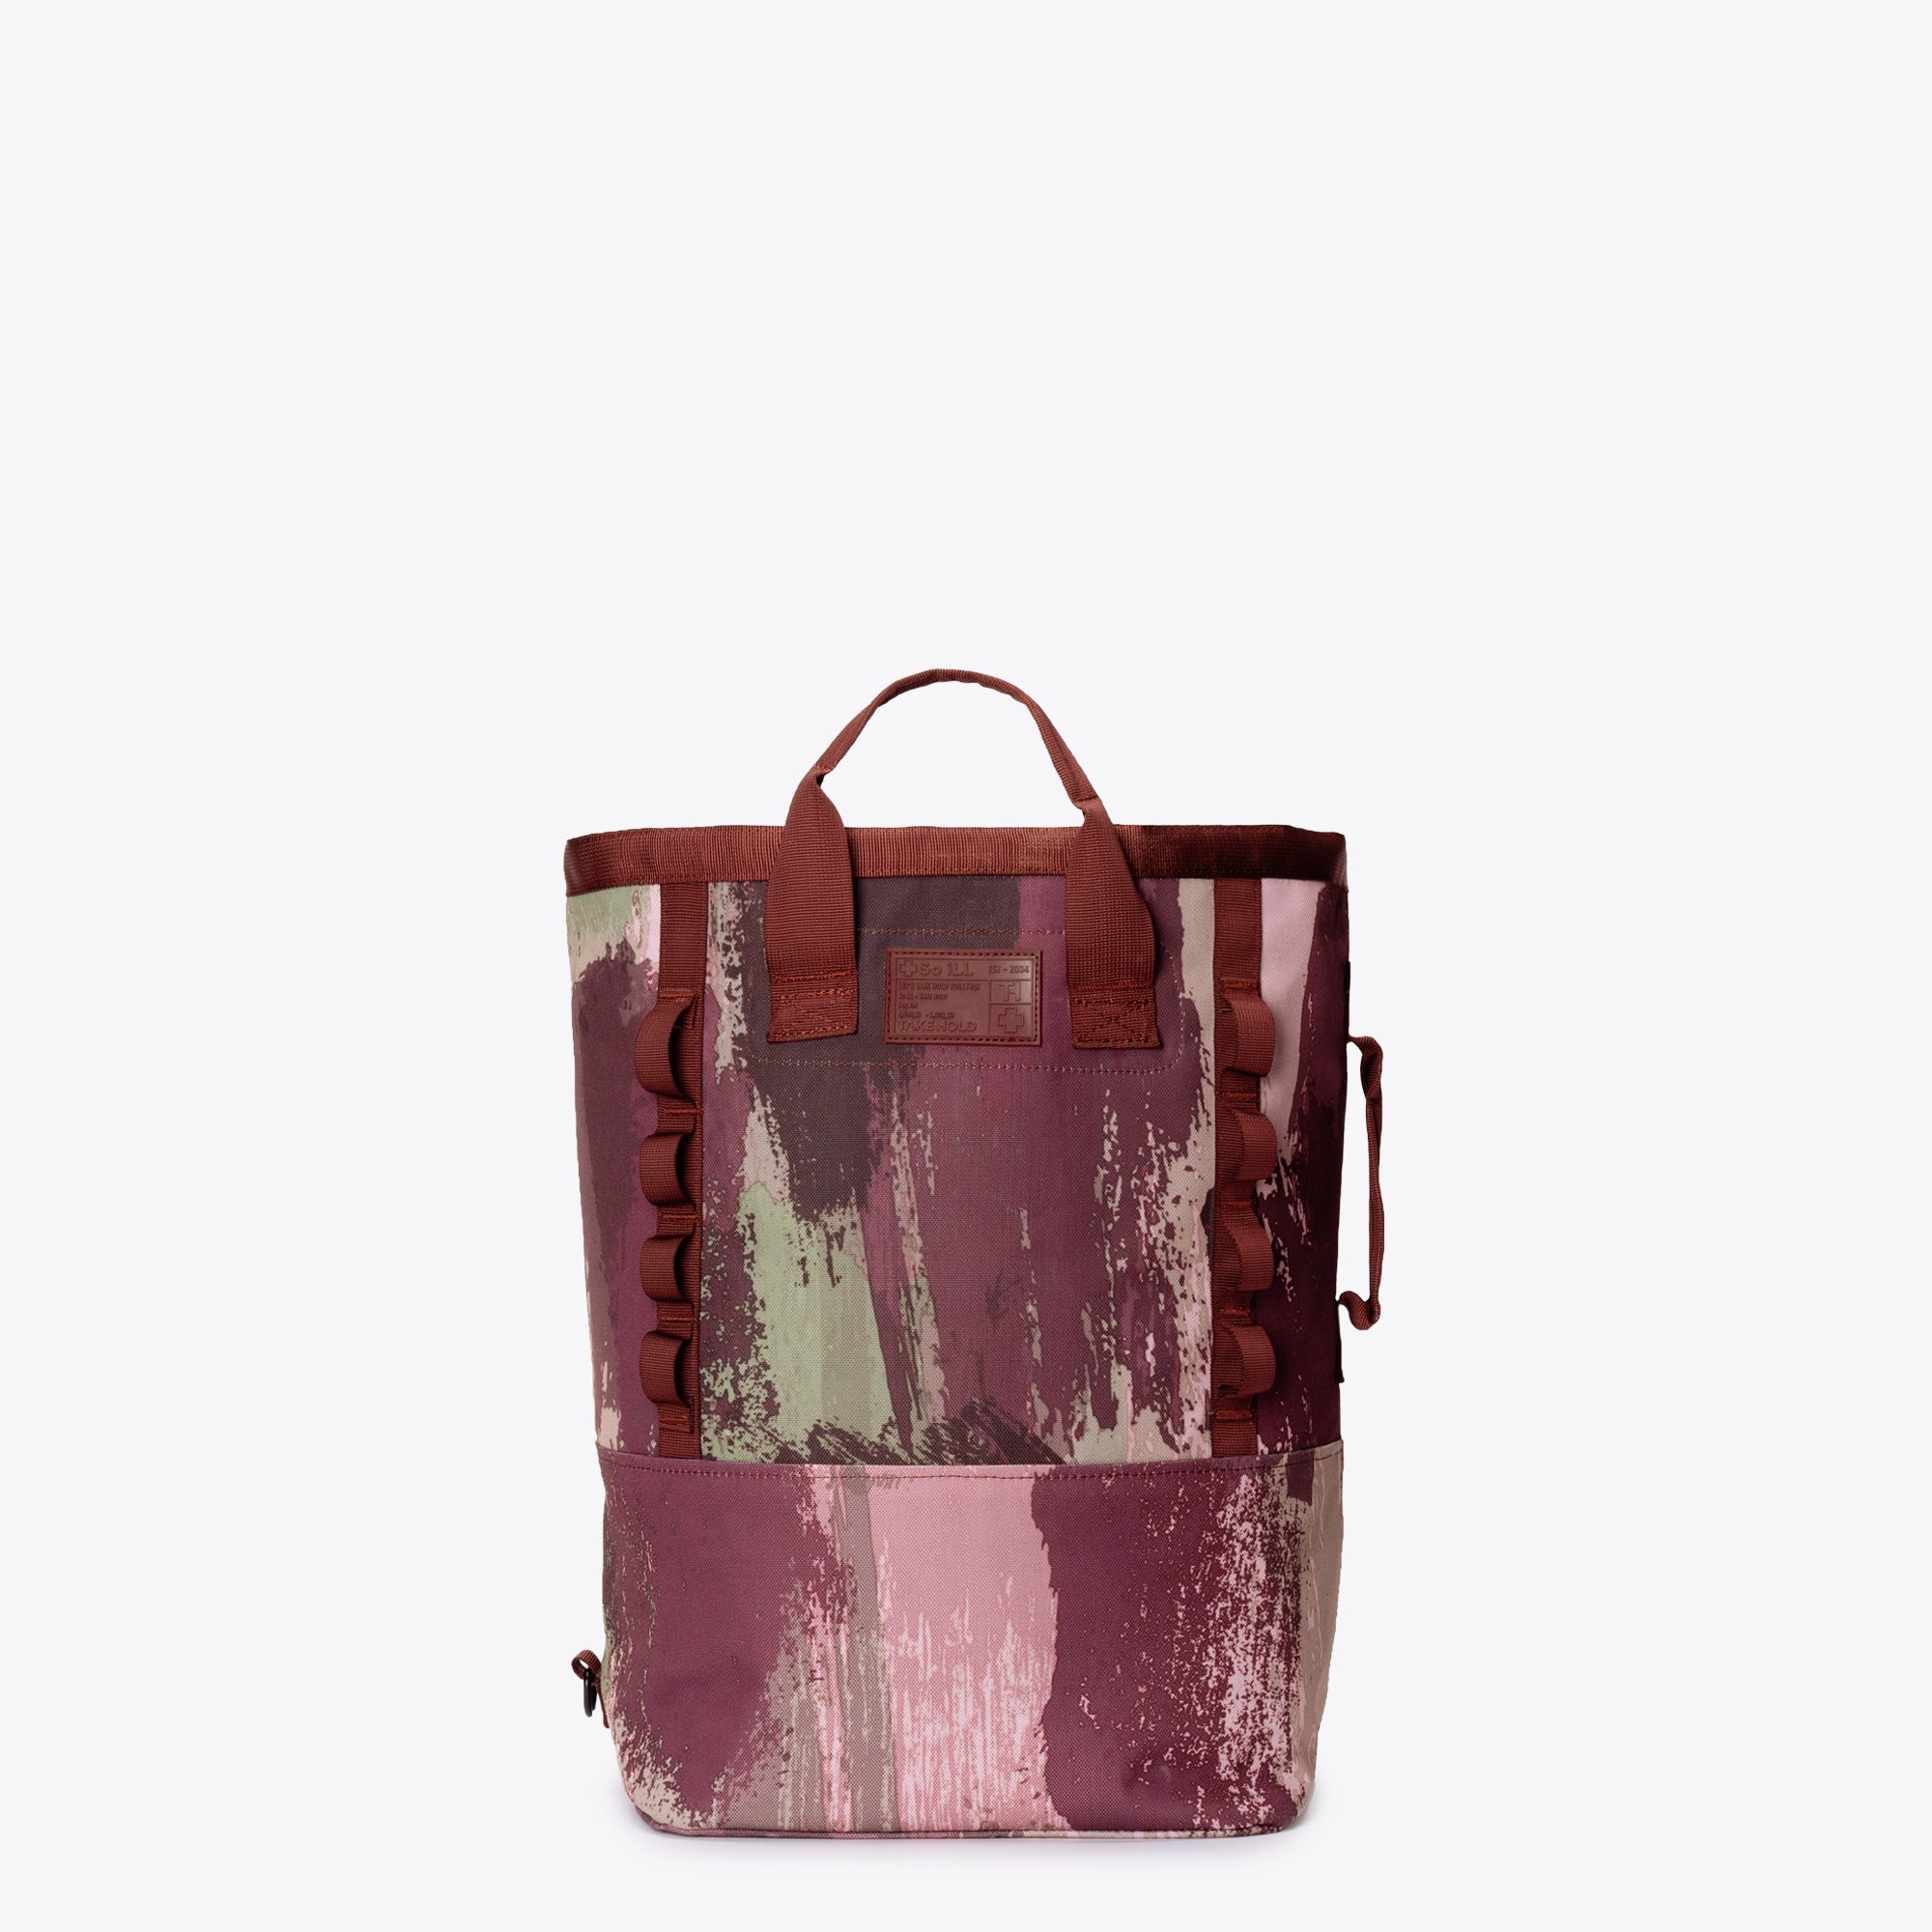 Luis Vuitton eco bag